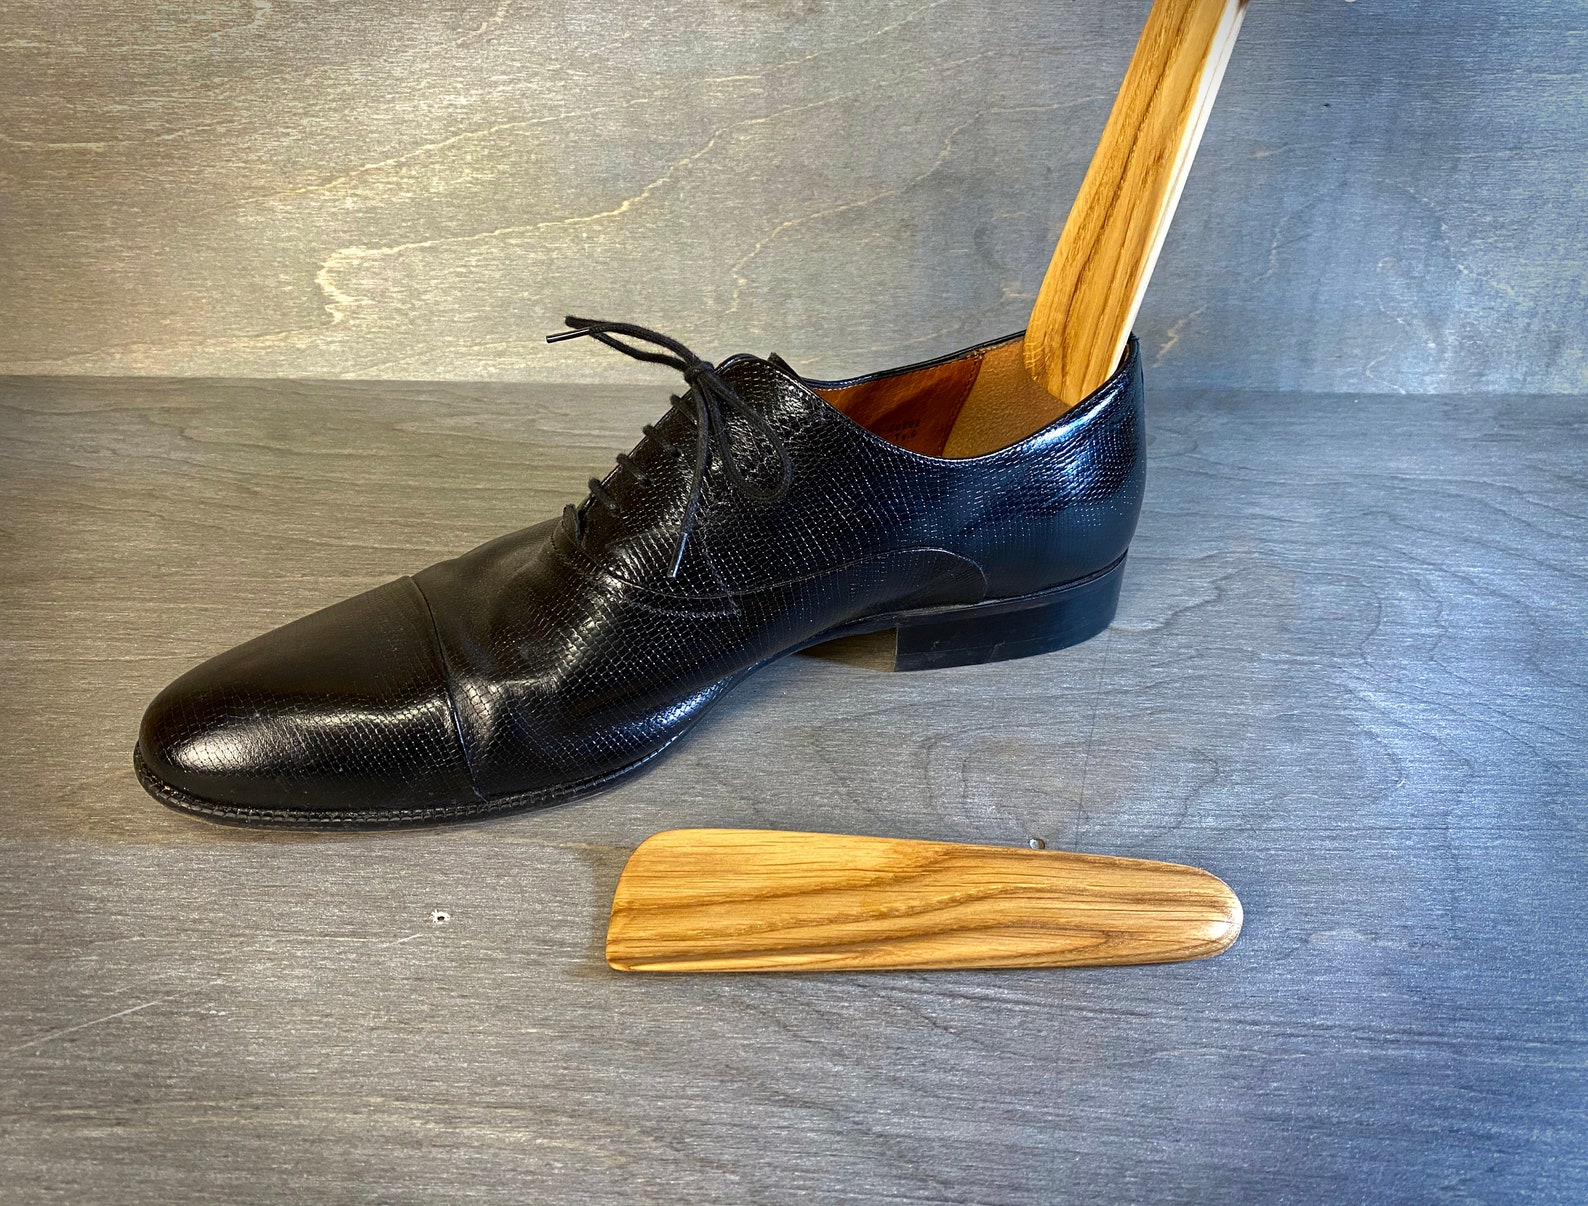 Oak Wood Mini Shoehorn Simple Pocket Shoespooner Handmade | Etsy